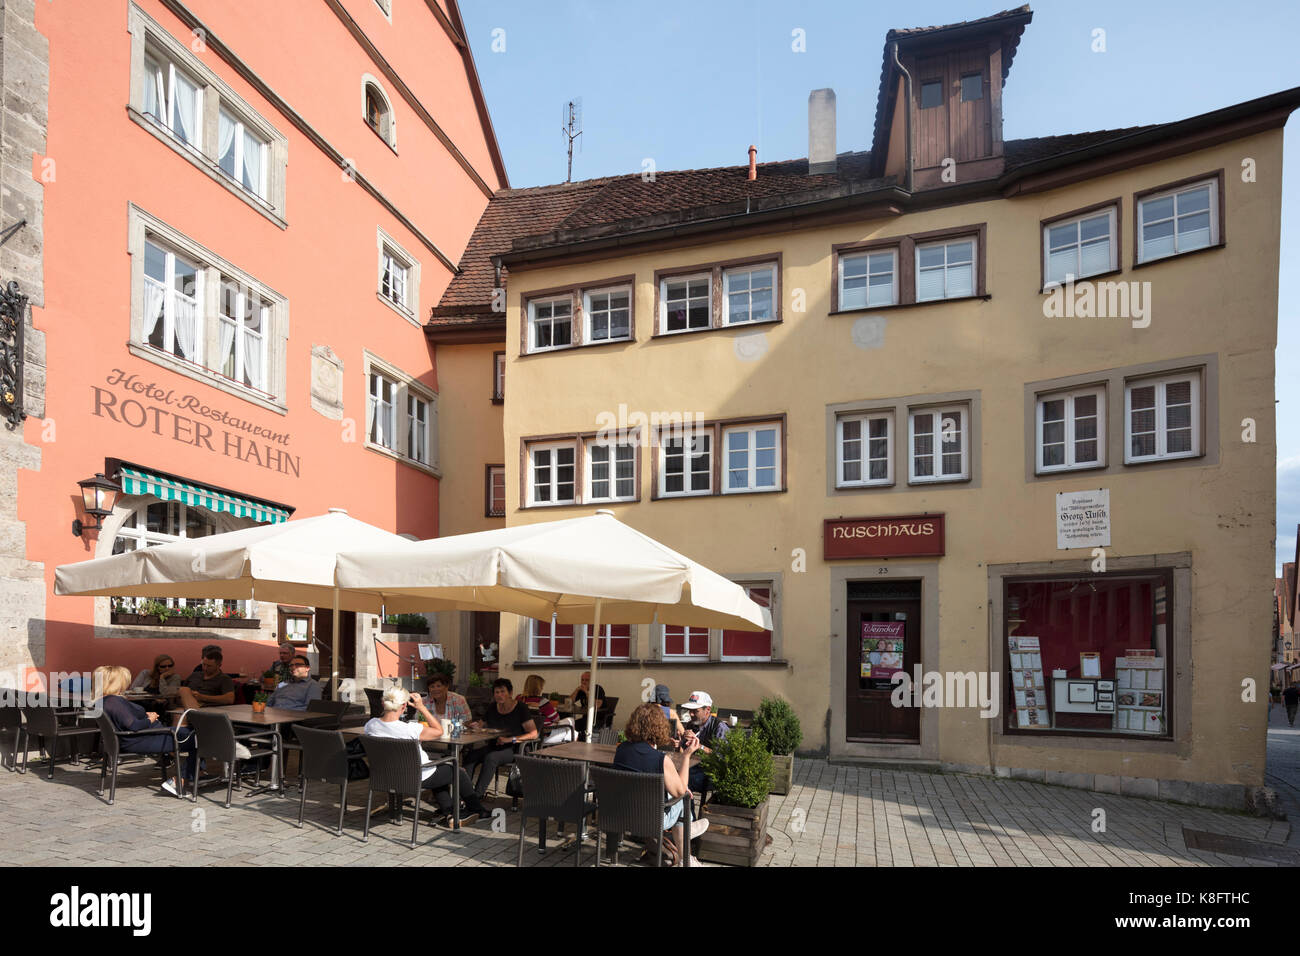 Rother Hahn ristorante vicino centro storico medievale di Rothenburg ob der Tauber, Franconia, Baviera, Germania Foto Stock